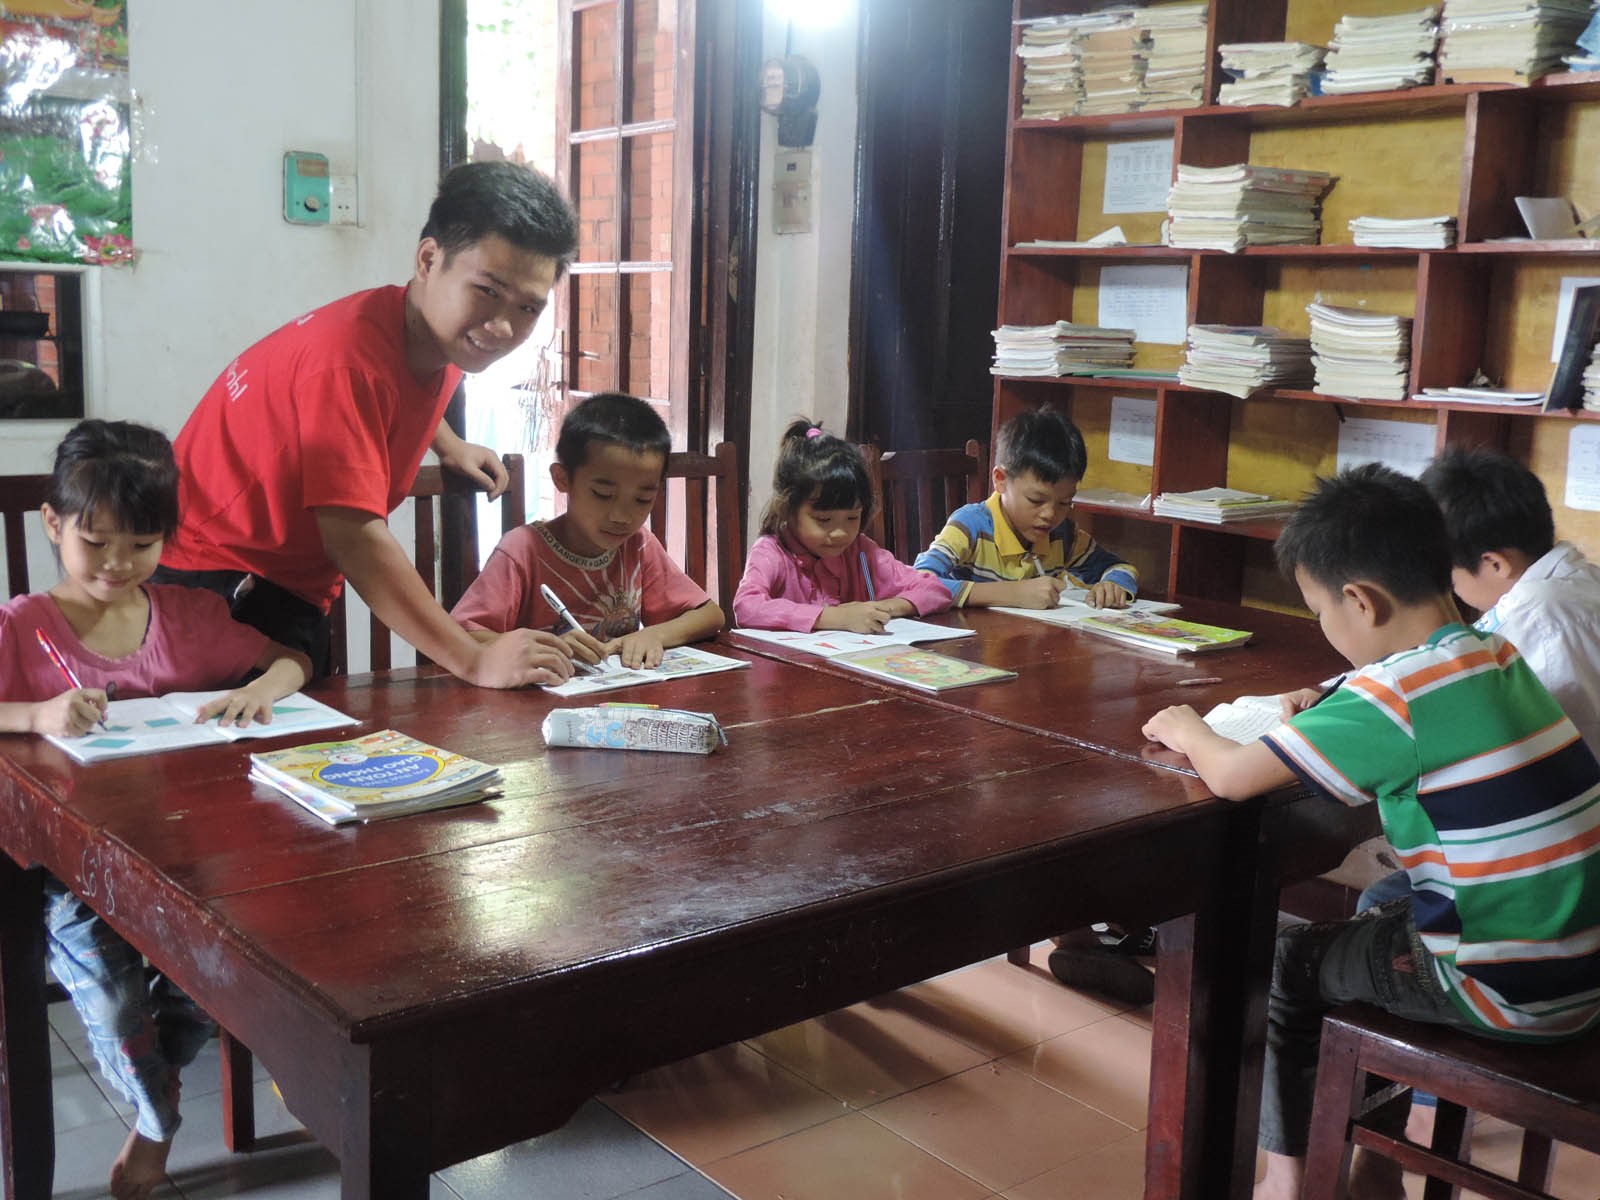 Homework at the SOS Children's Village in Viet Tri.